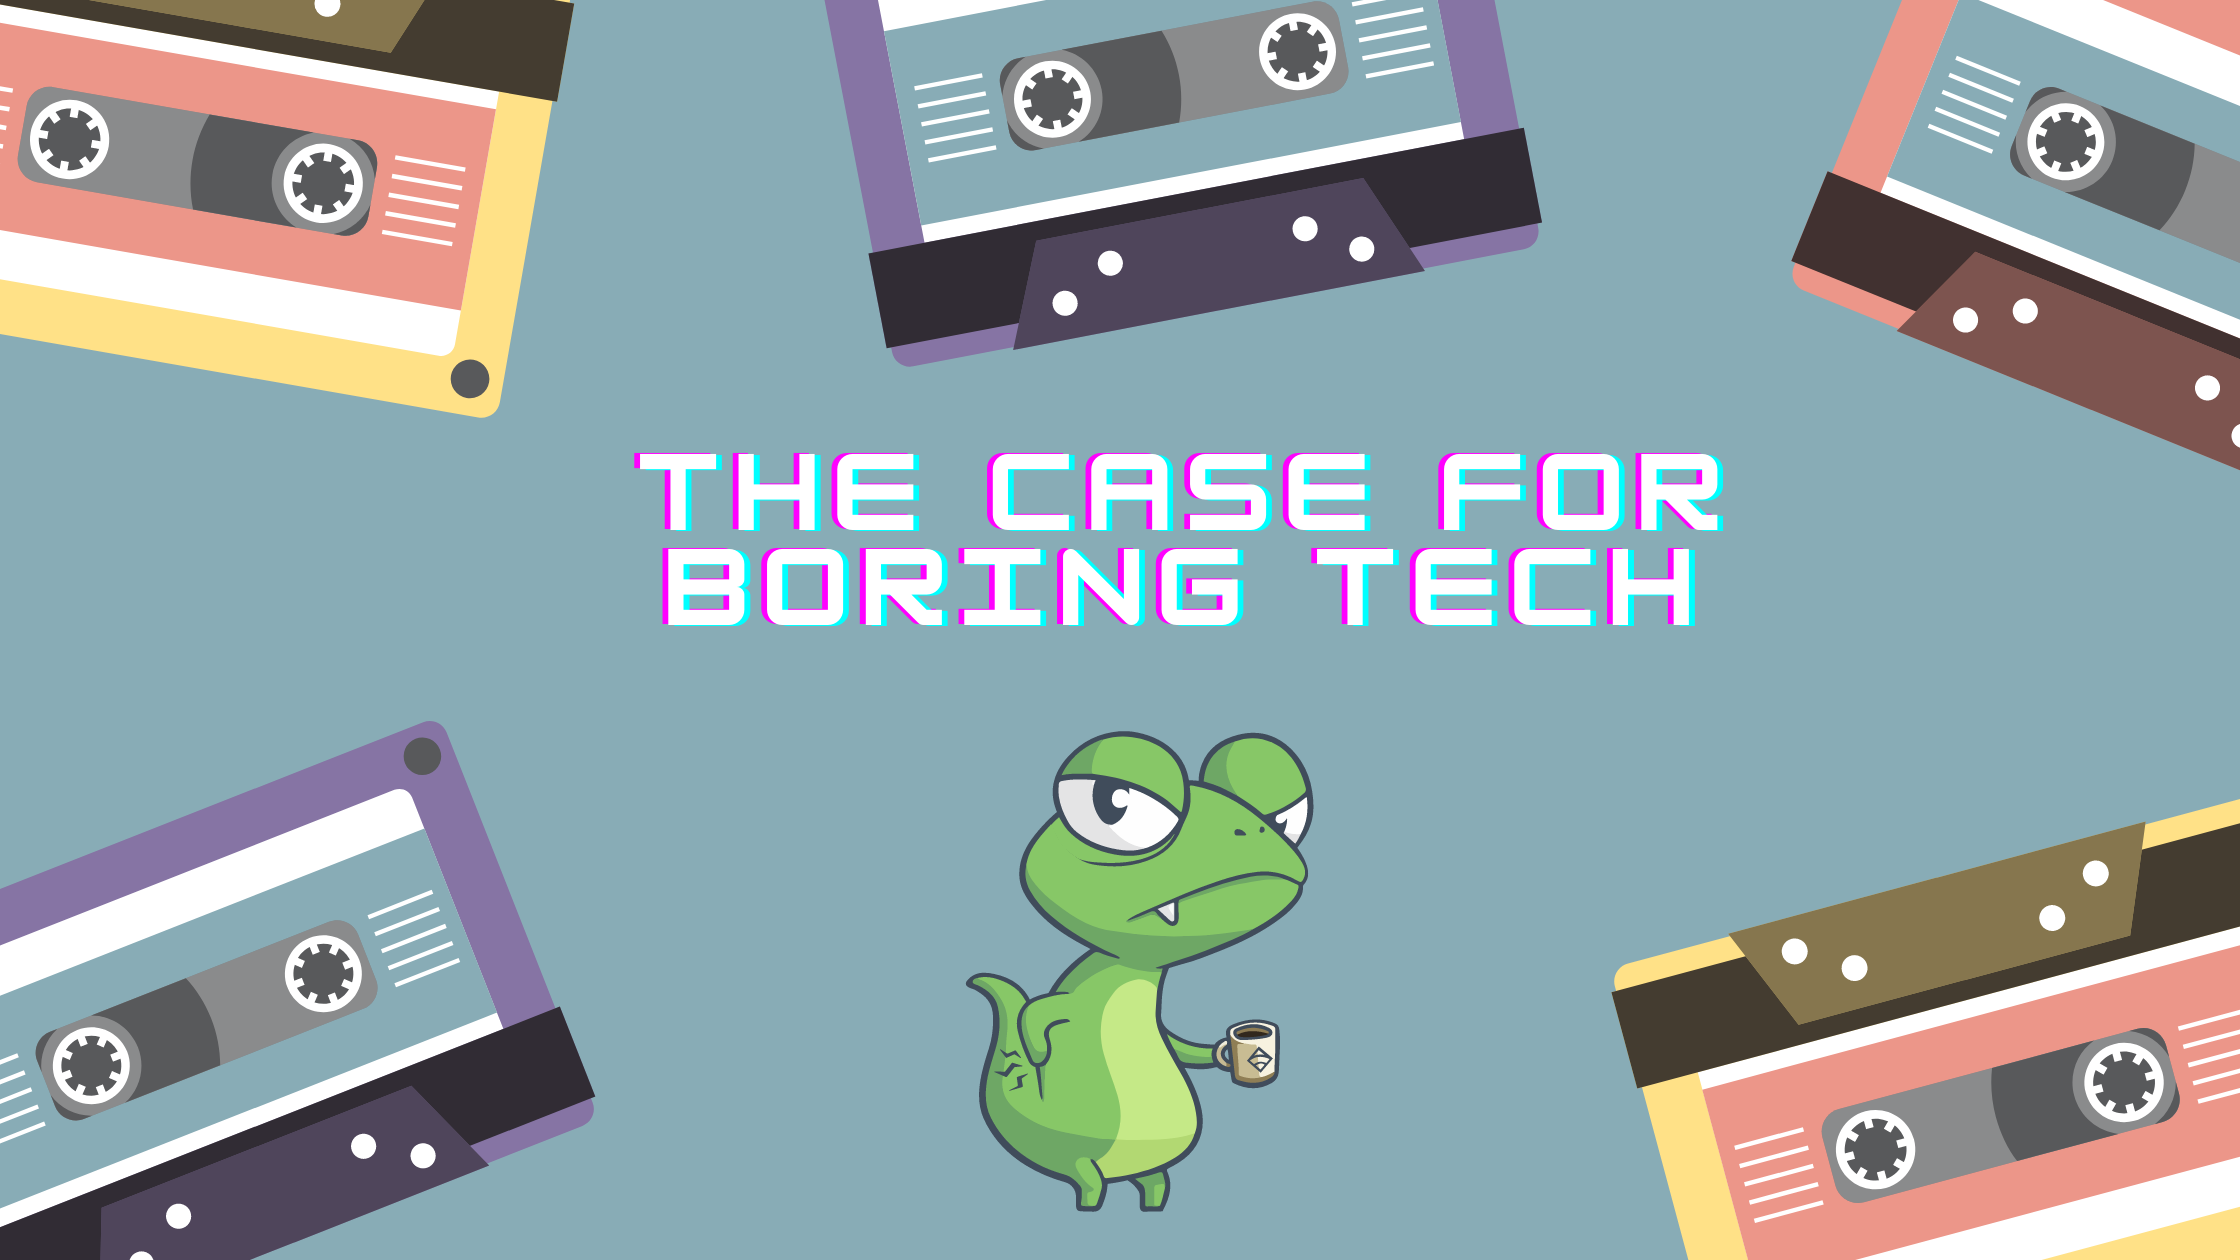 The case for boring tech